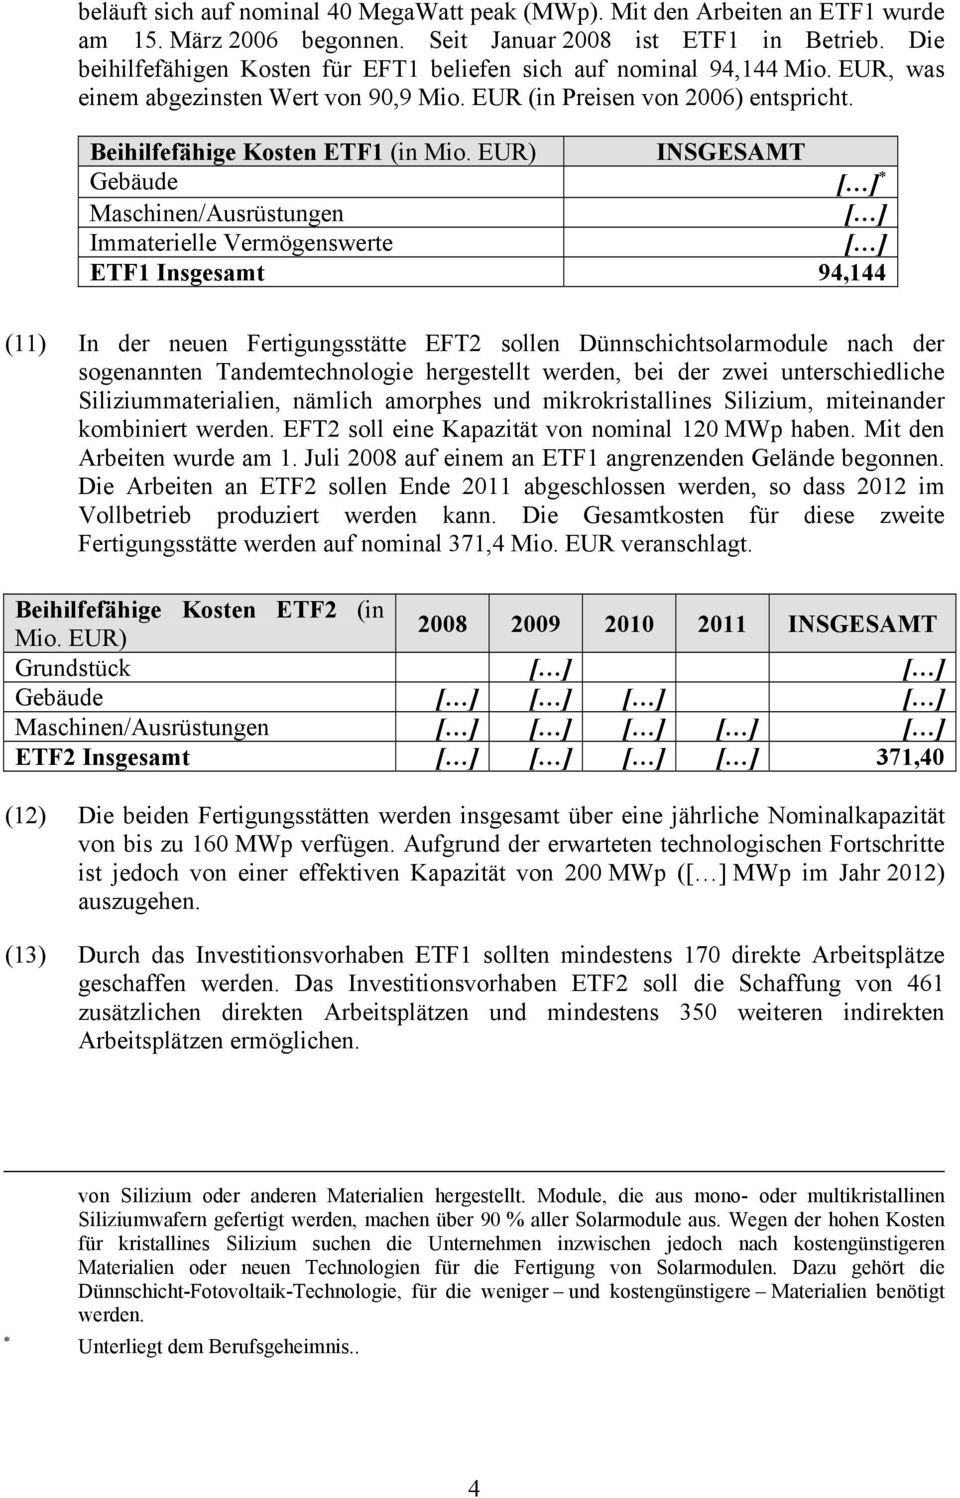 EUR) INSGESAMT Gebäude [ ] Maschinen/Ausrüstungen [ ] Immaterielle Vermögenswerte [ ] ETF1 Insgesamt 94,144 (11) In der neuen Fertigungsstätte EFT2 sollen Dünnschichtsolarmodule nach der sogenannten